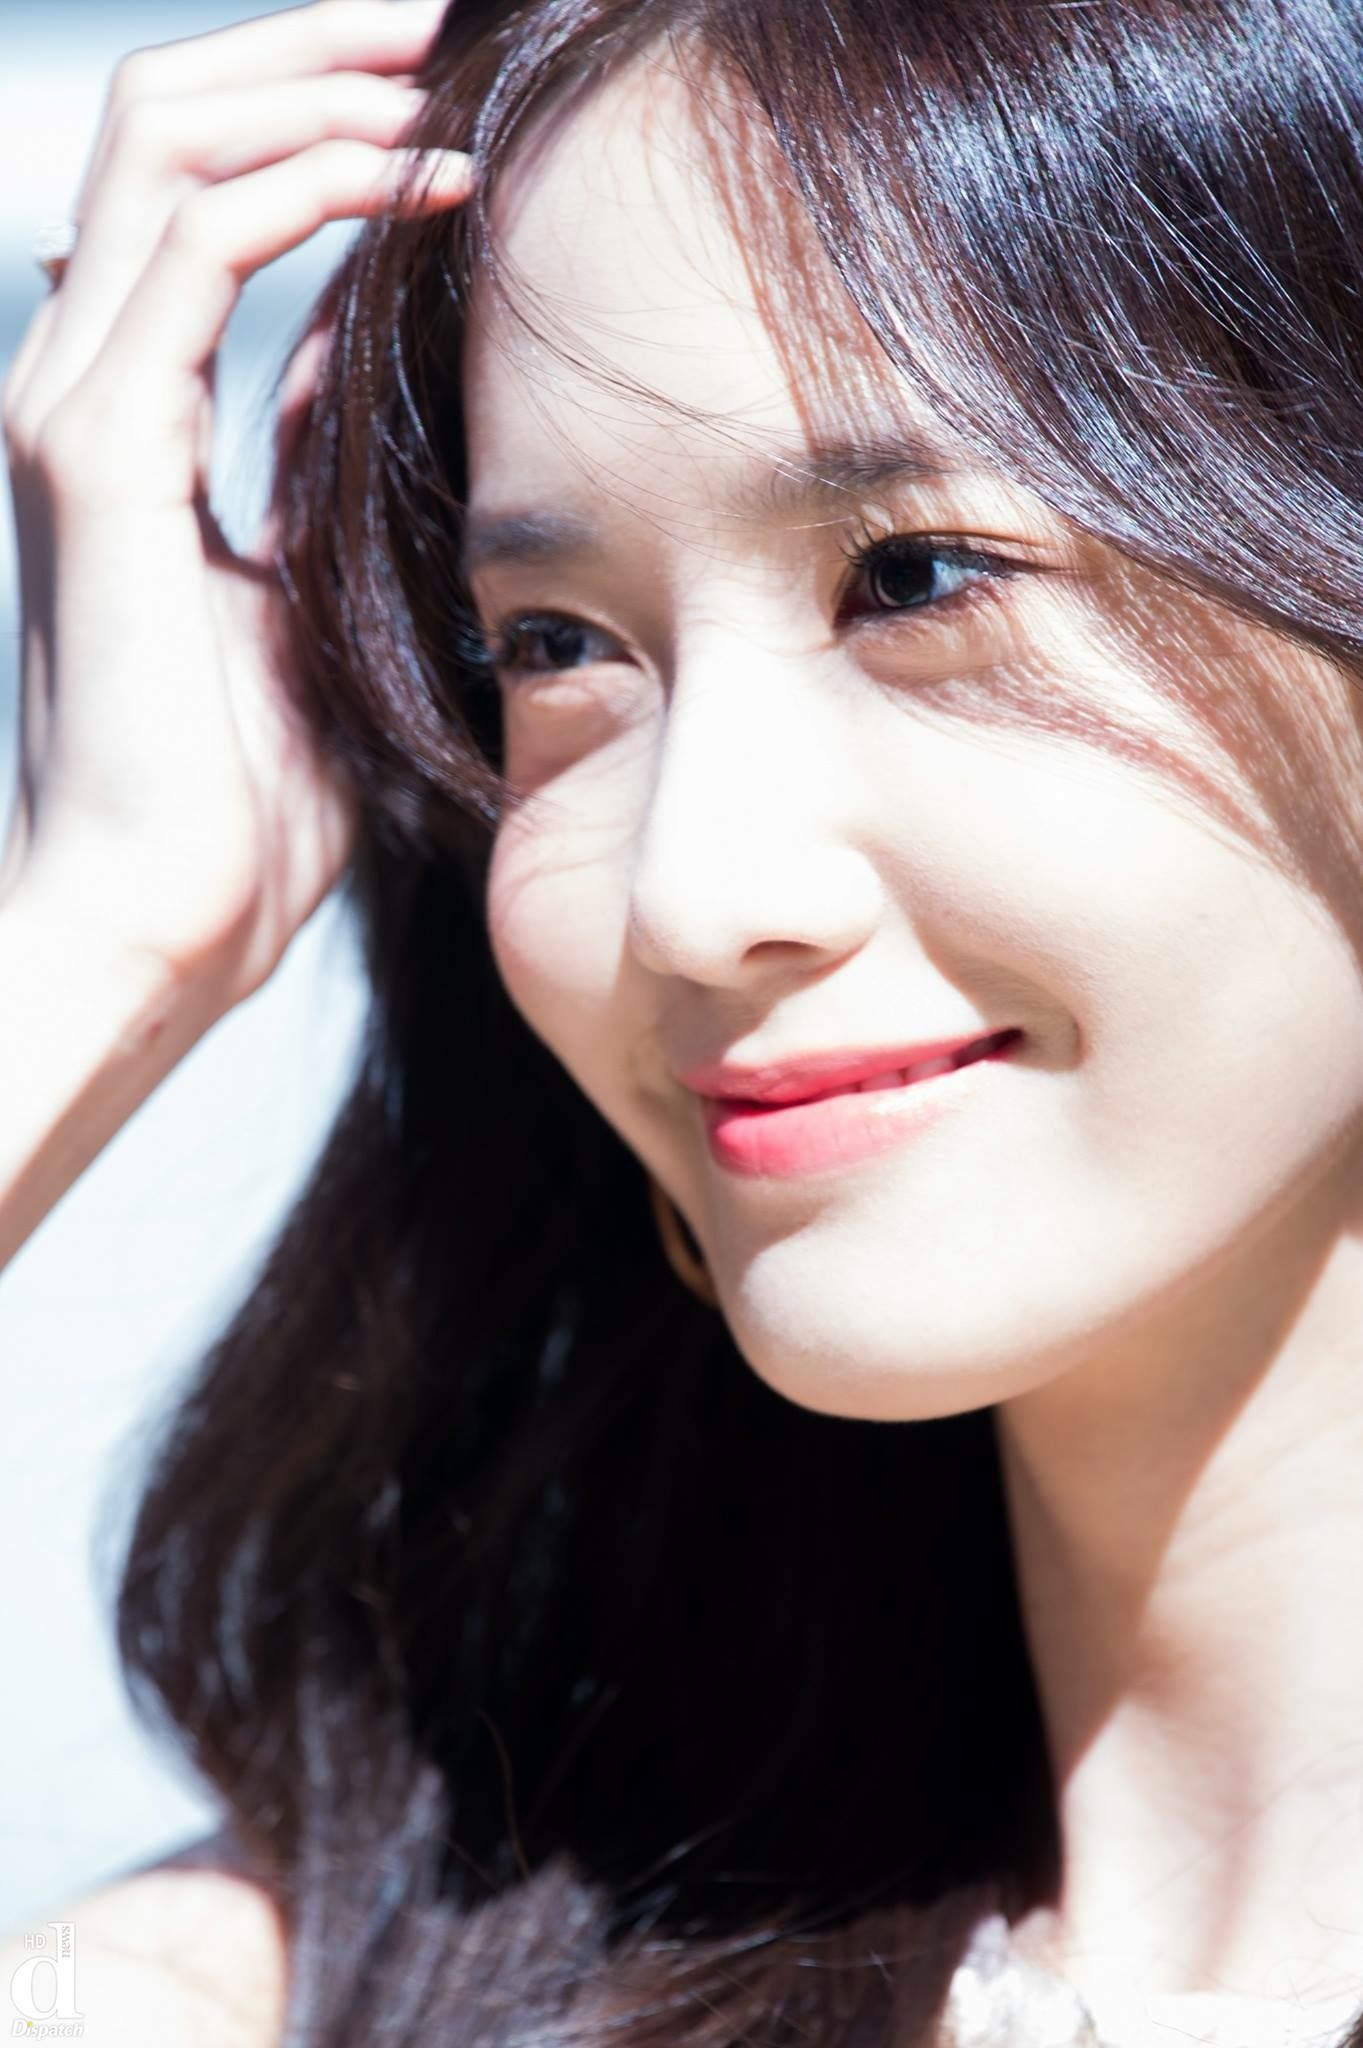 Nhắc đến sao Hàn có bọng mắt thì phải kể đến Yoona (SNSD), cô nàng có gương mặt nhỏ nhắn, làn da trắng sứ thanh khiết và đôi mắt cười đặc trưng đúng tiêu chuẩn nét đẹp Hàn Quốc.